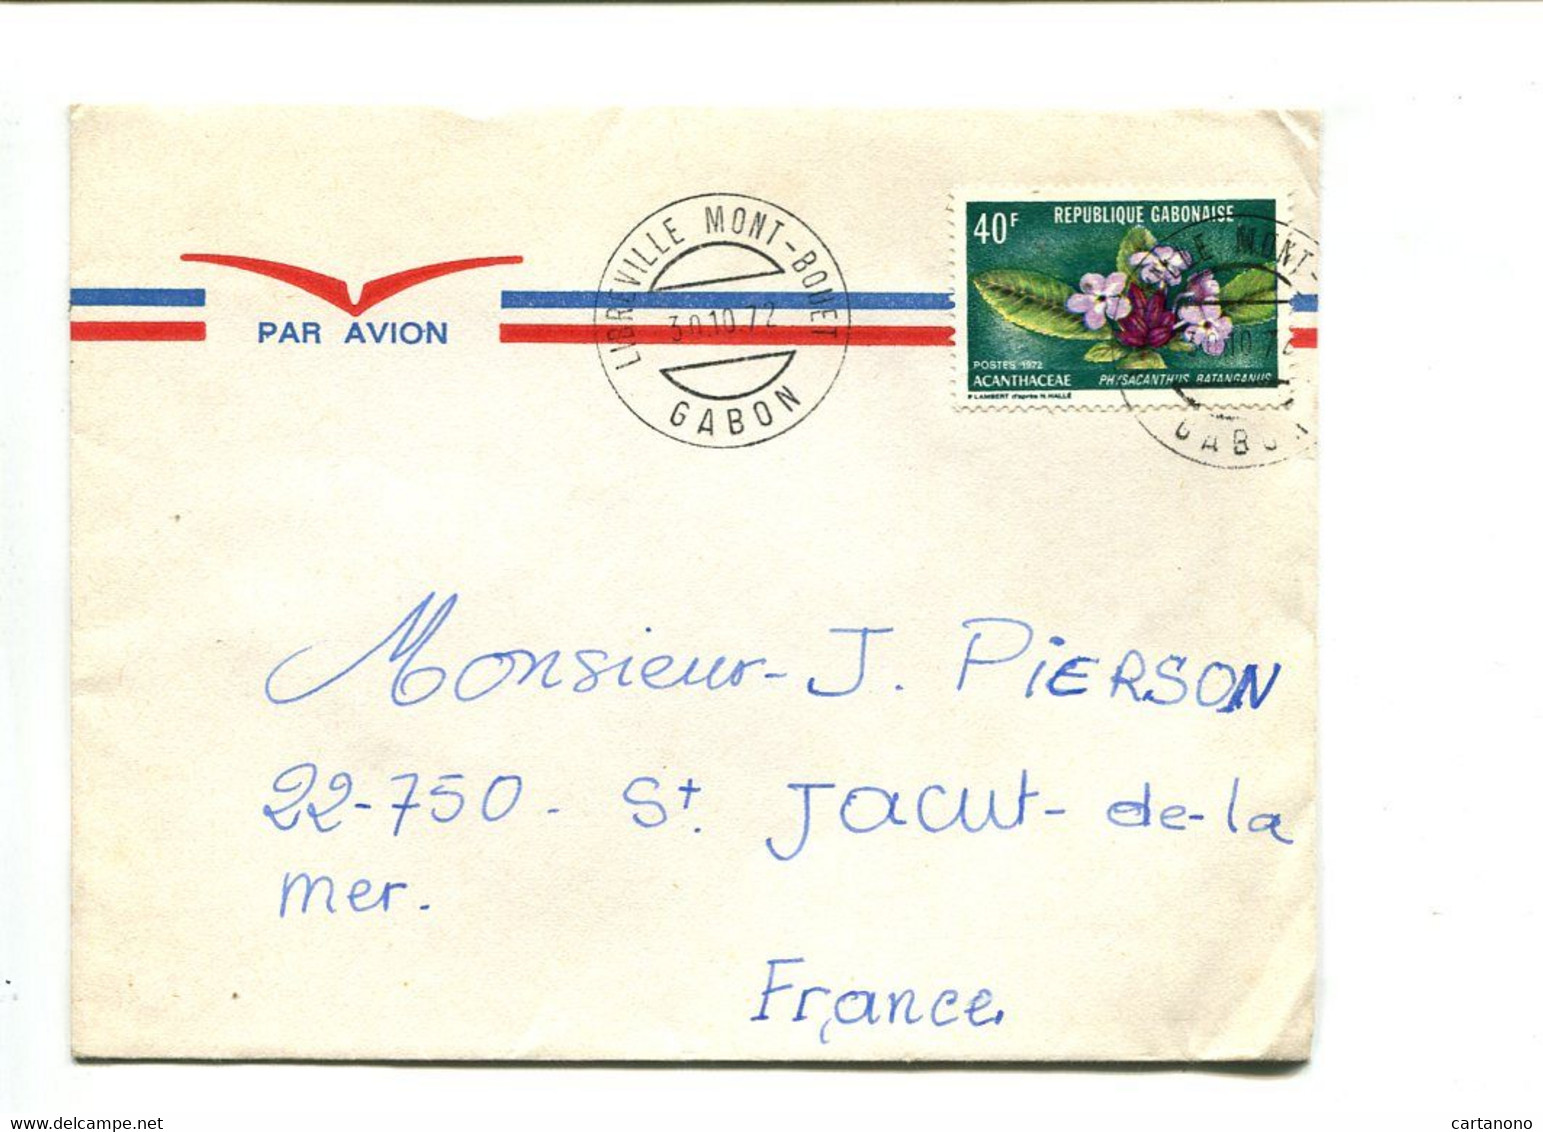 GABON Libreville Mont Bouet 1975  - Affranchissement Seul Sur Lettre Par Avion - Fleur - Gabun (1960-...)